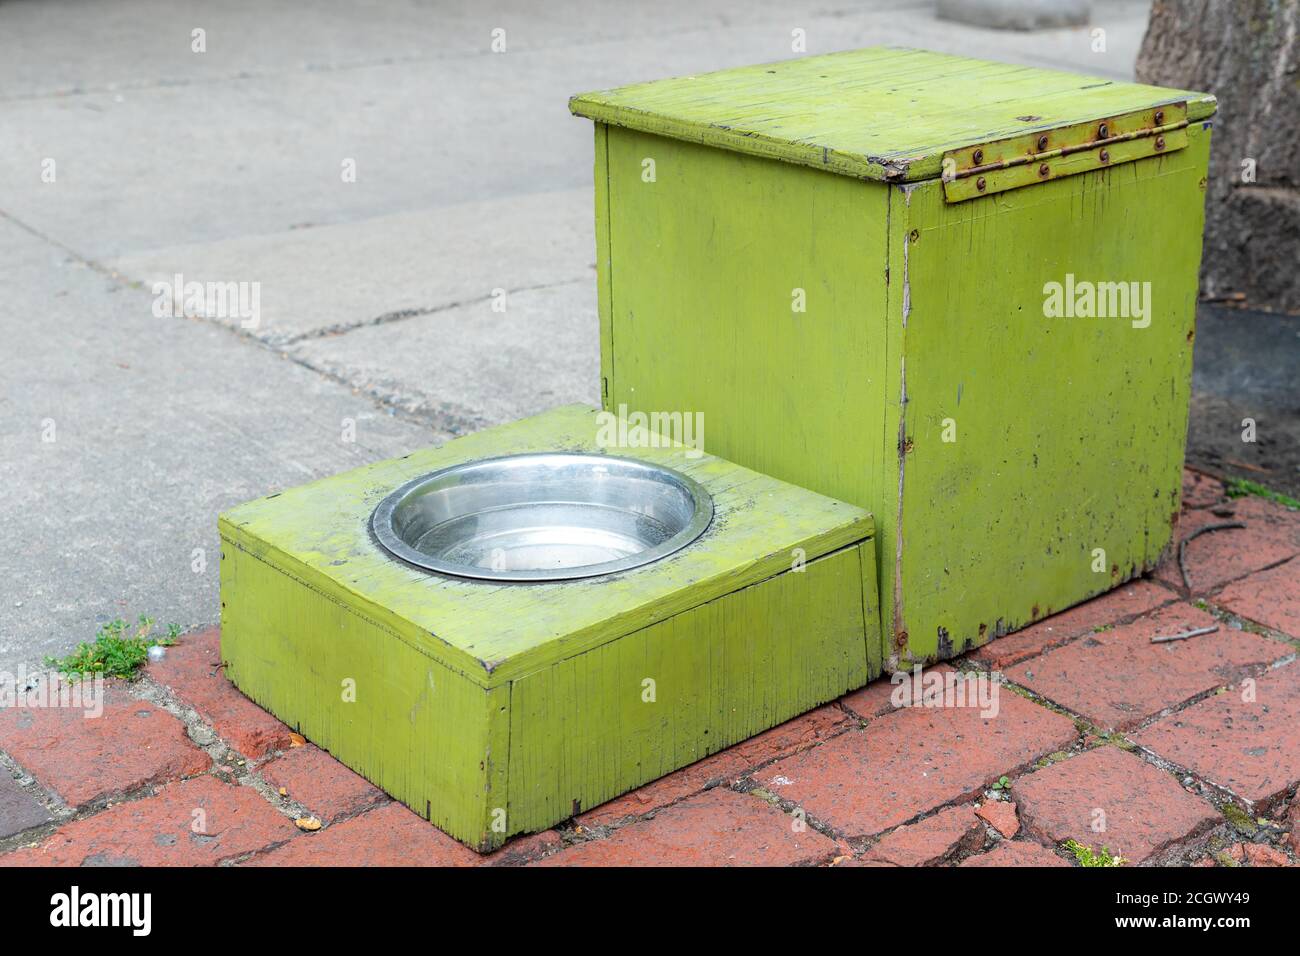 Un plat d'eau sur un trottoir pour les chiens assoiffés. Le bol est dans un cadre en bois vert, et une boîte en bois vert est à côté. Banque D'Images